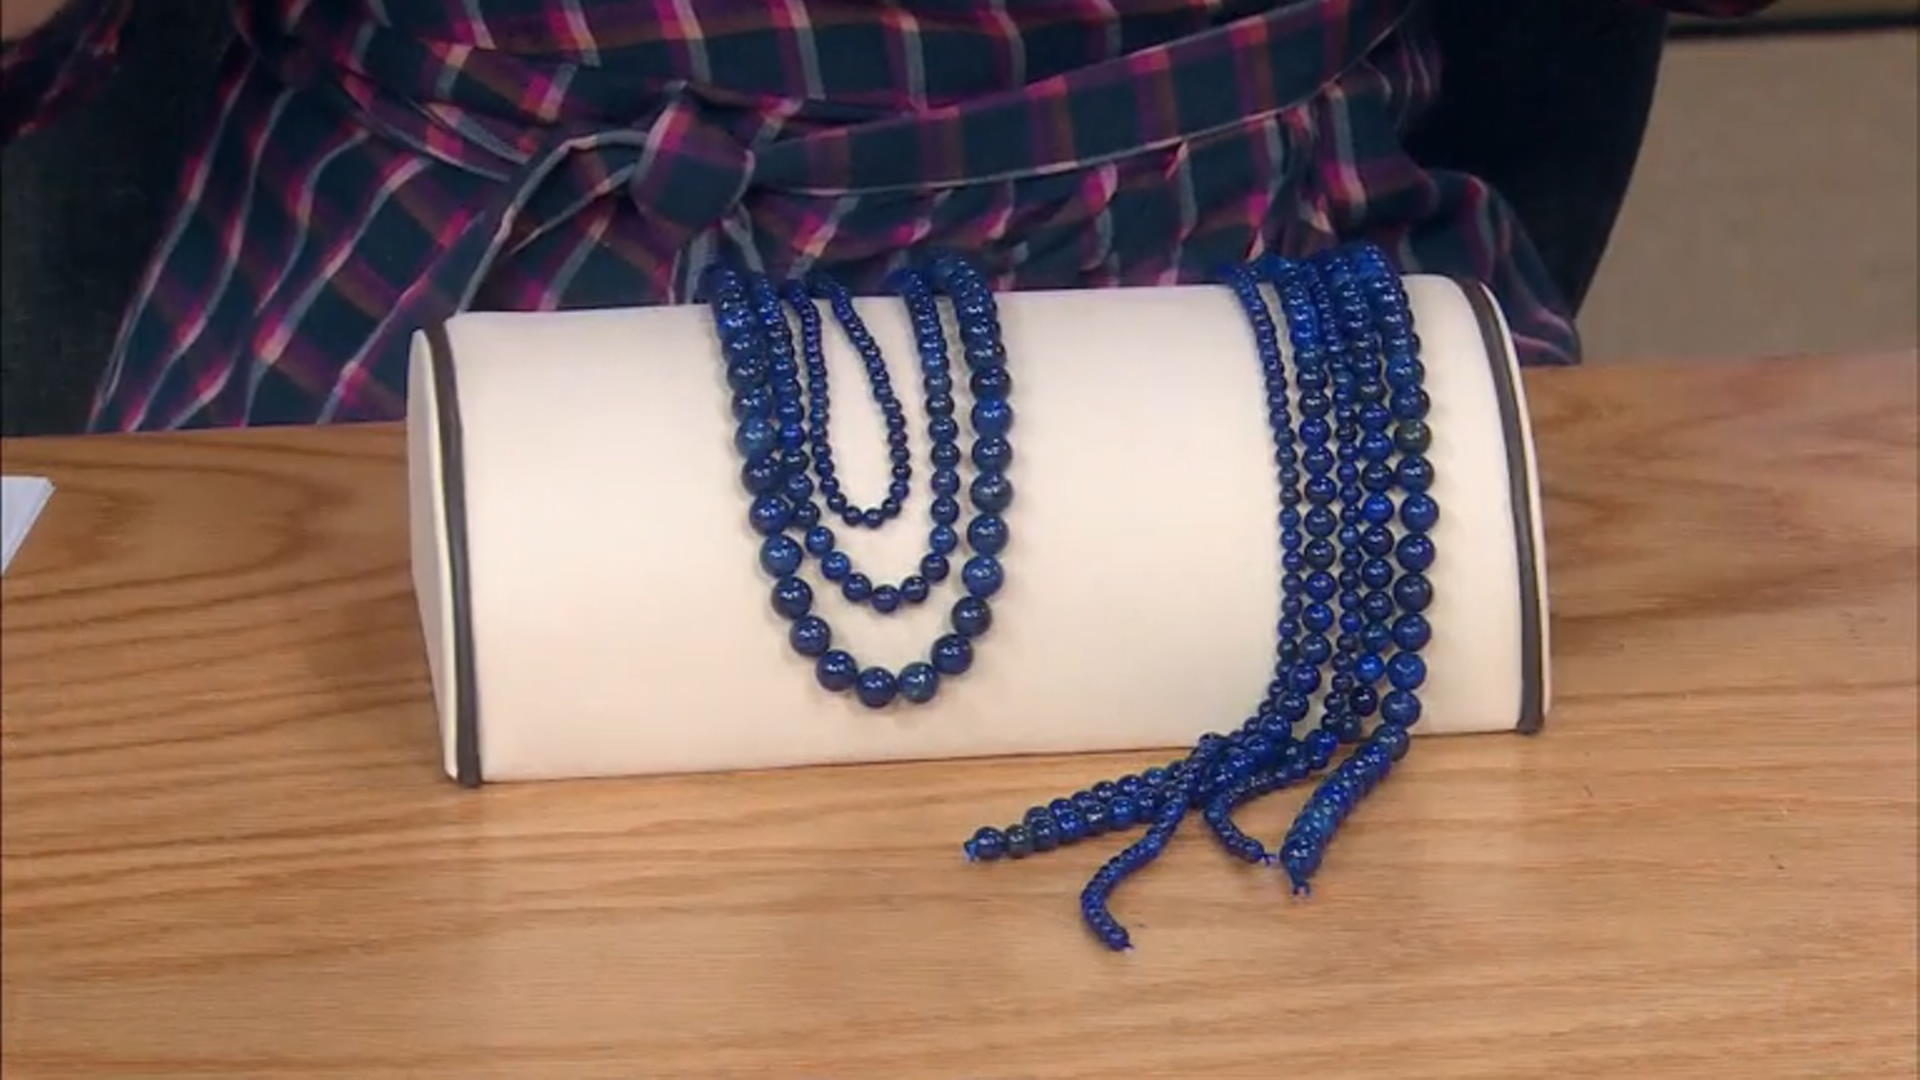 Lapis Lazuli & Sodalite Round Bead Strand Set of 6 appx 14-15" Video Thumbnail